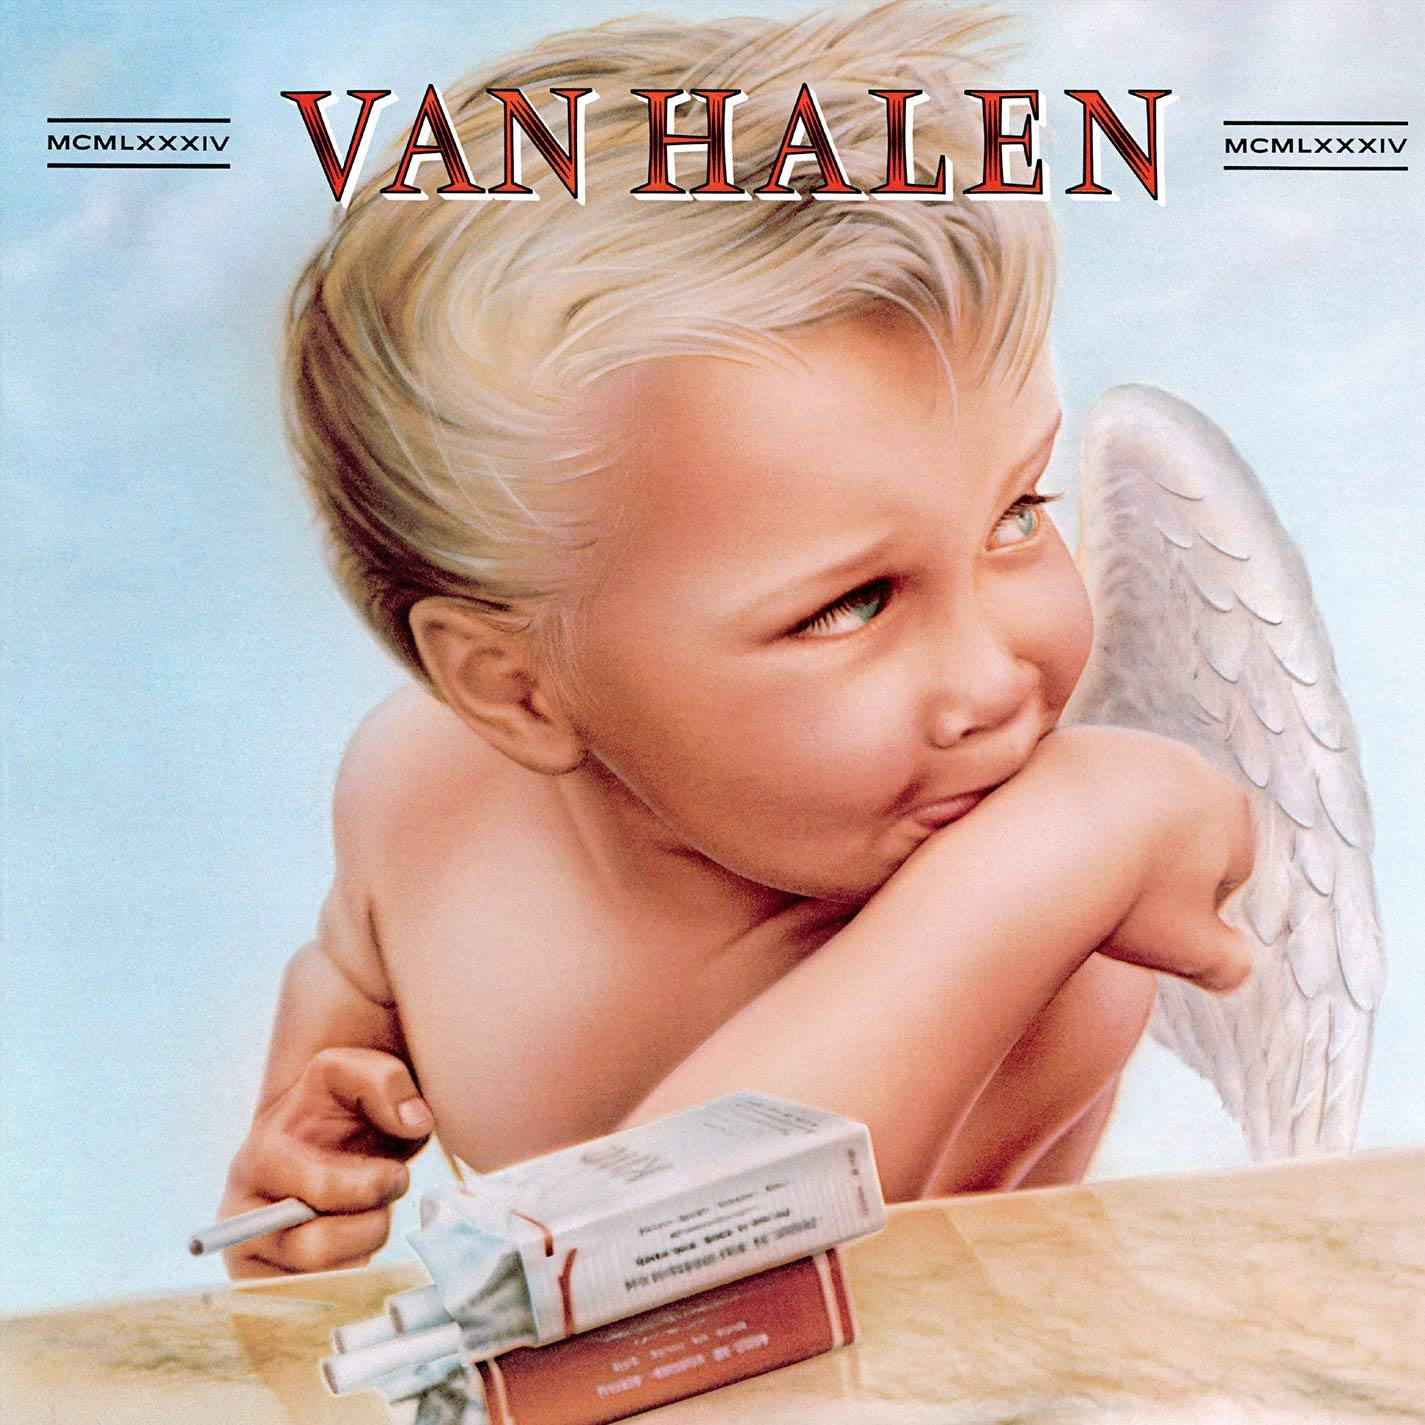 Van Halen “1984” album cover